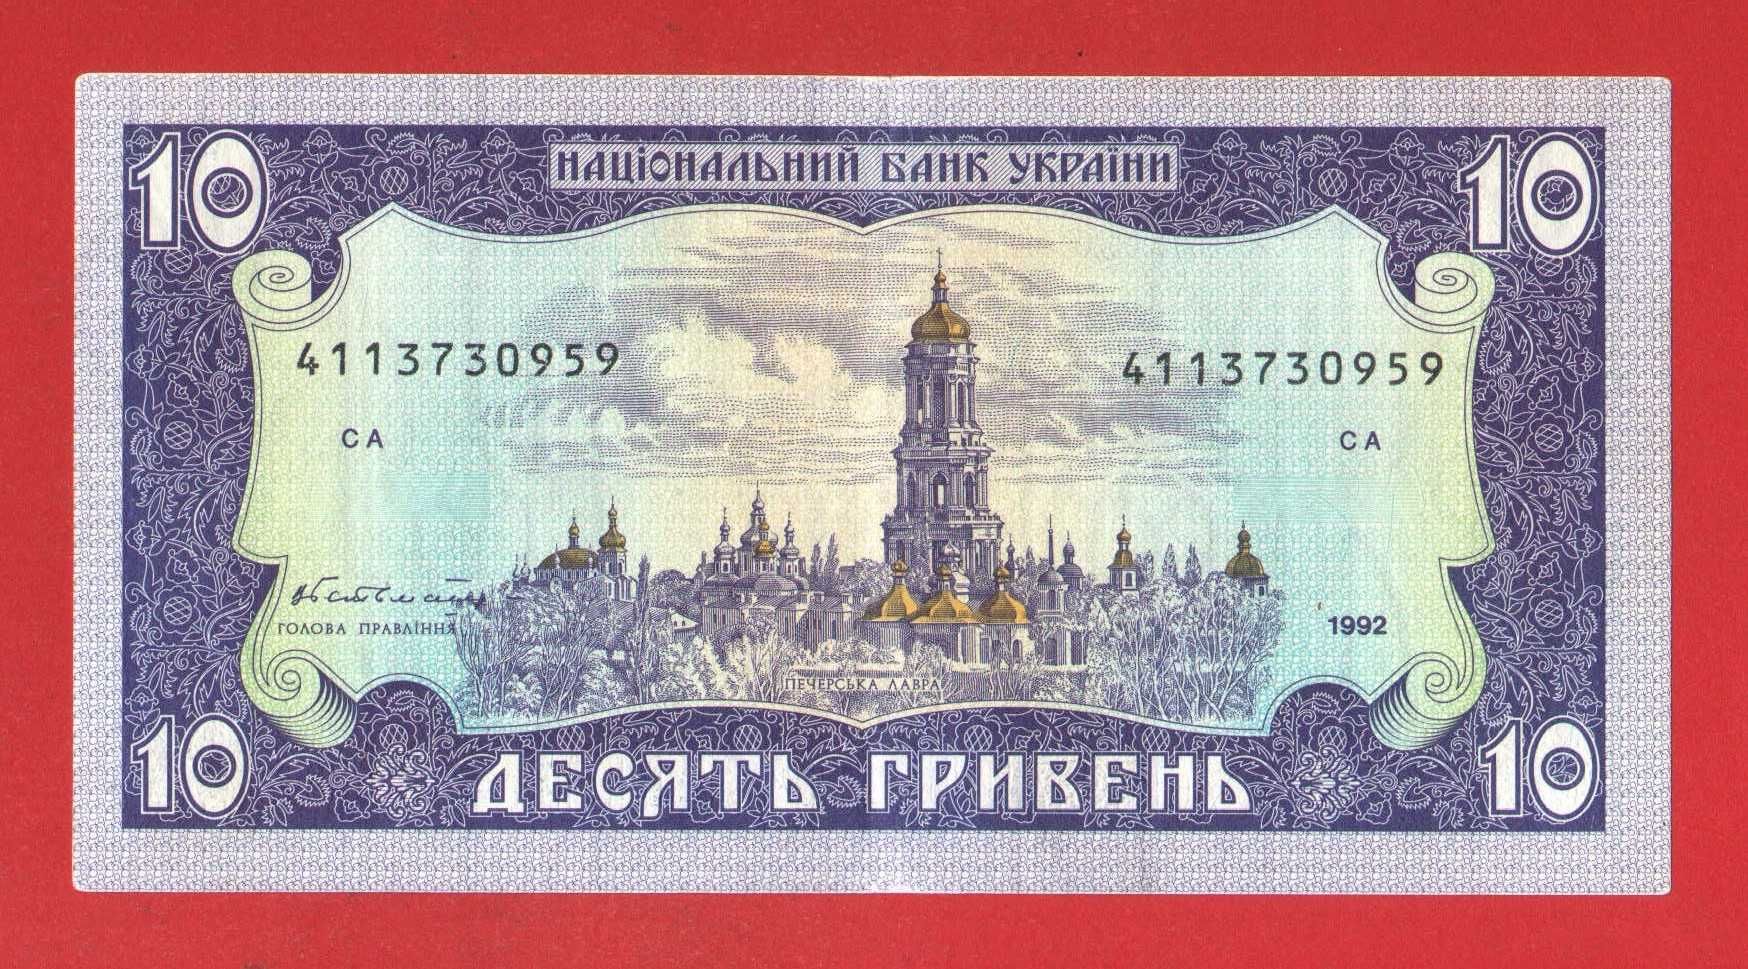 10 гривень / гривня ( грн ) 1992 р Гетьман Україна бона